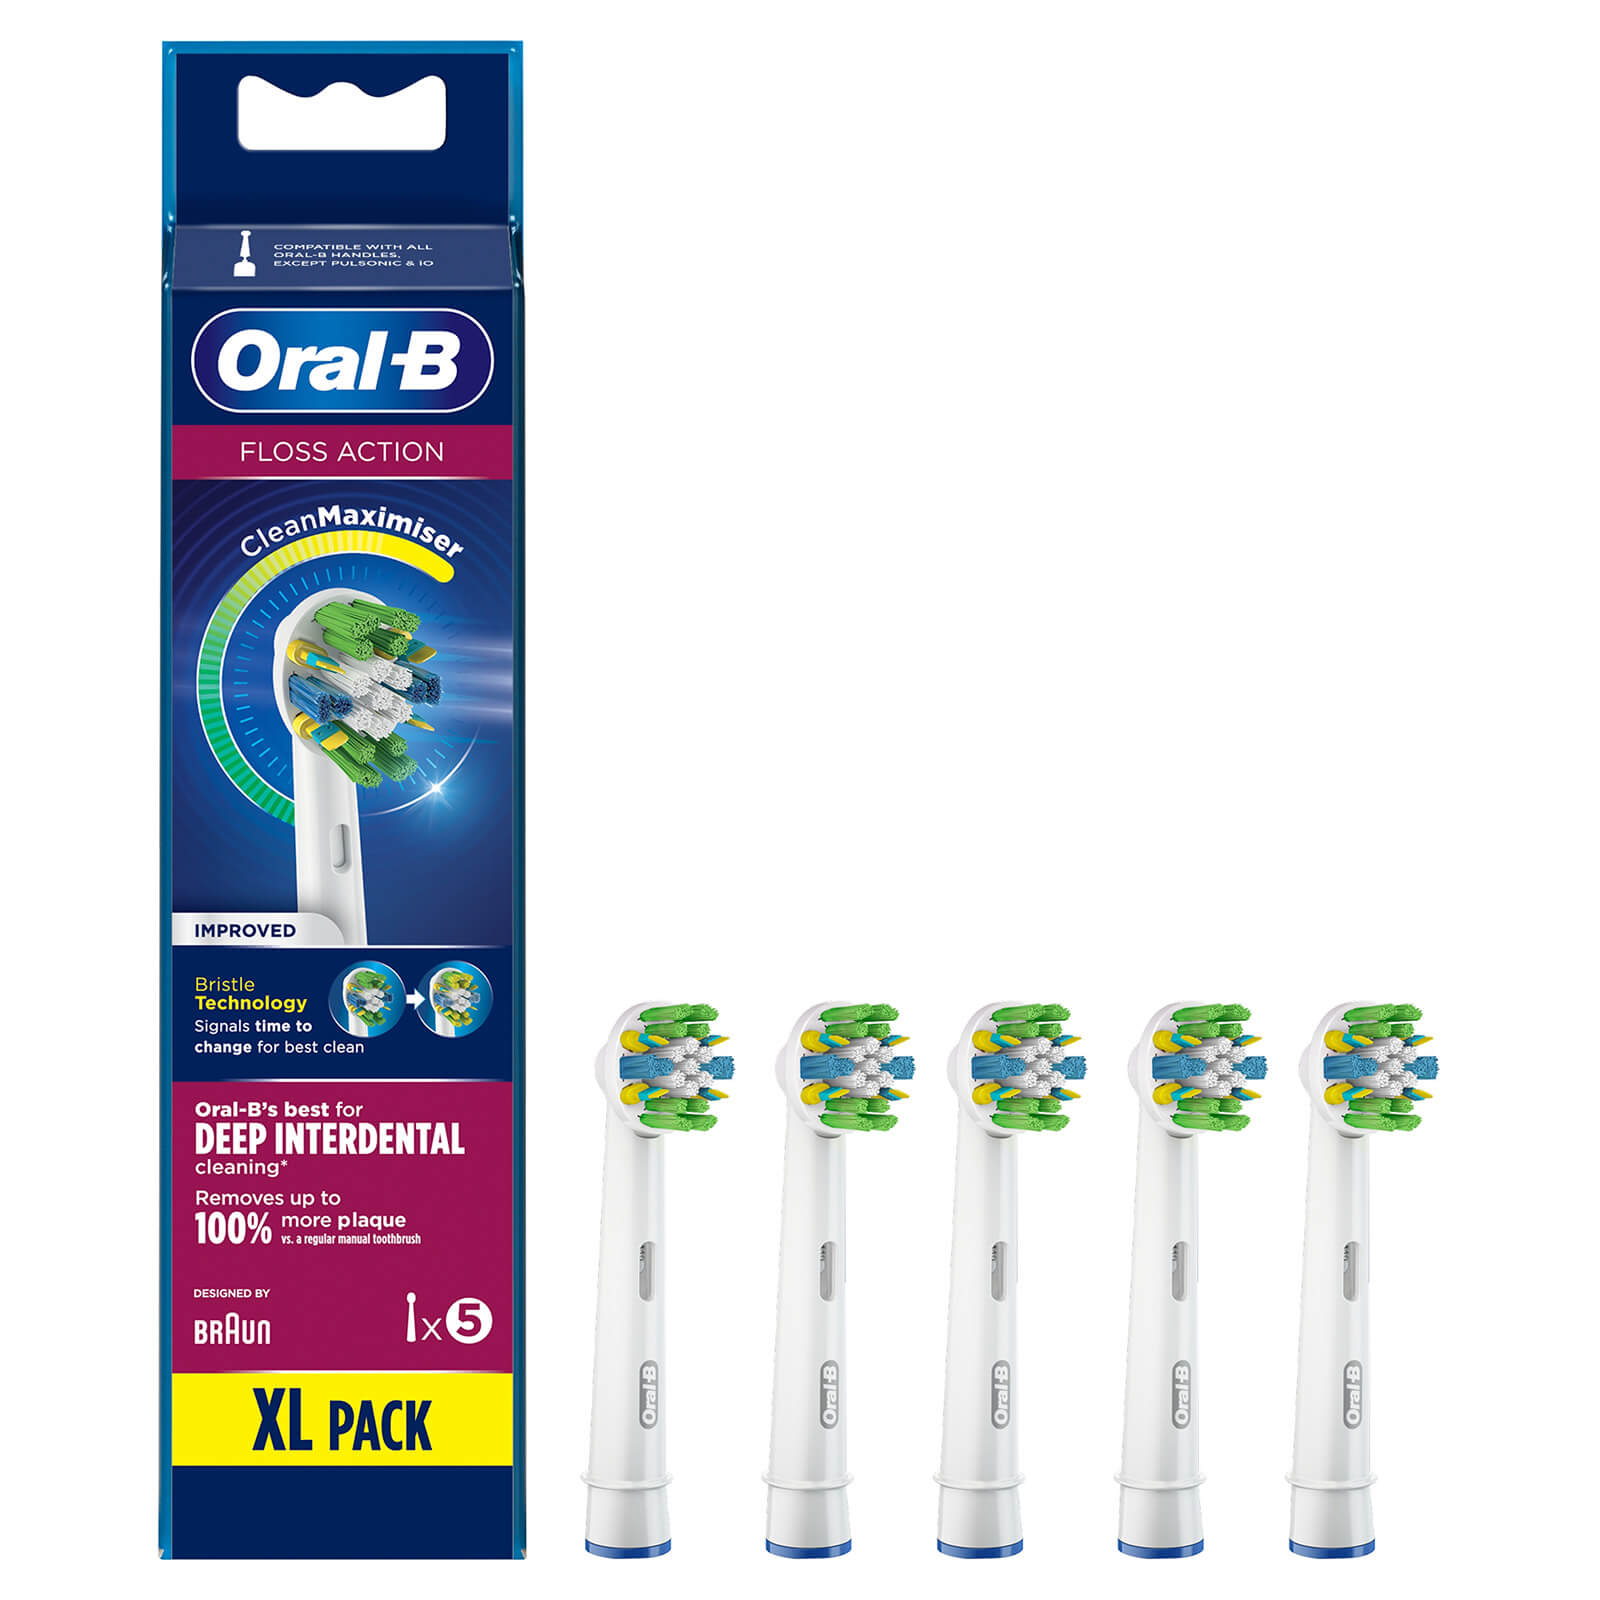 Cabezal de cepillado Oral-B Flos sAction con CleanMaximiser - 5 unidades